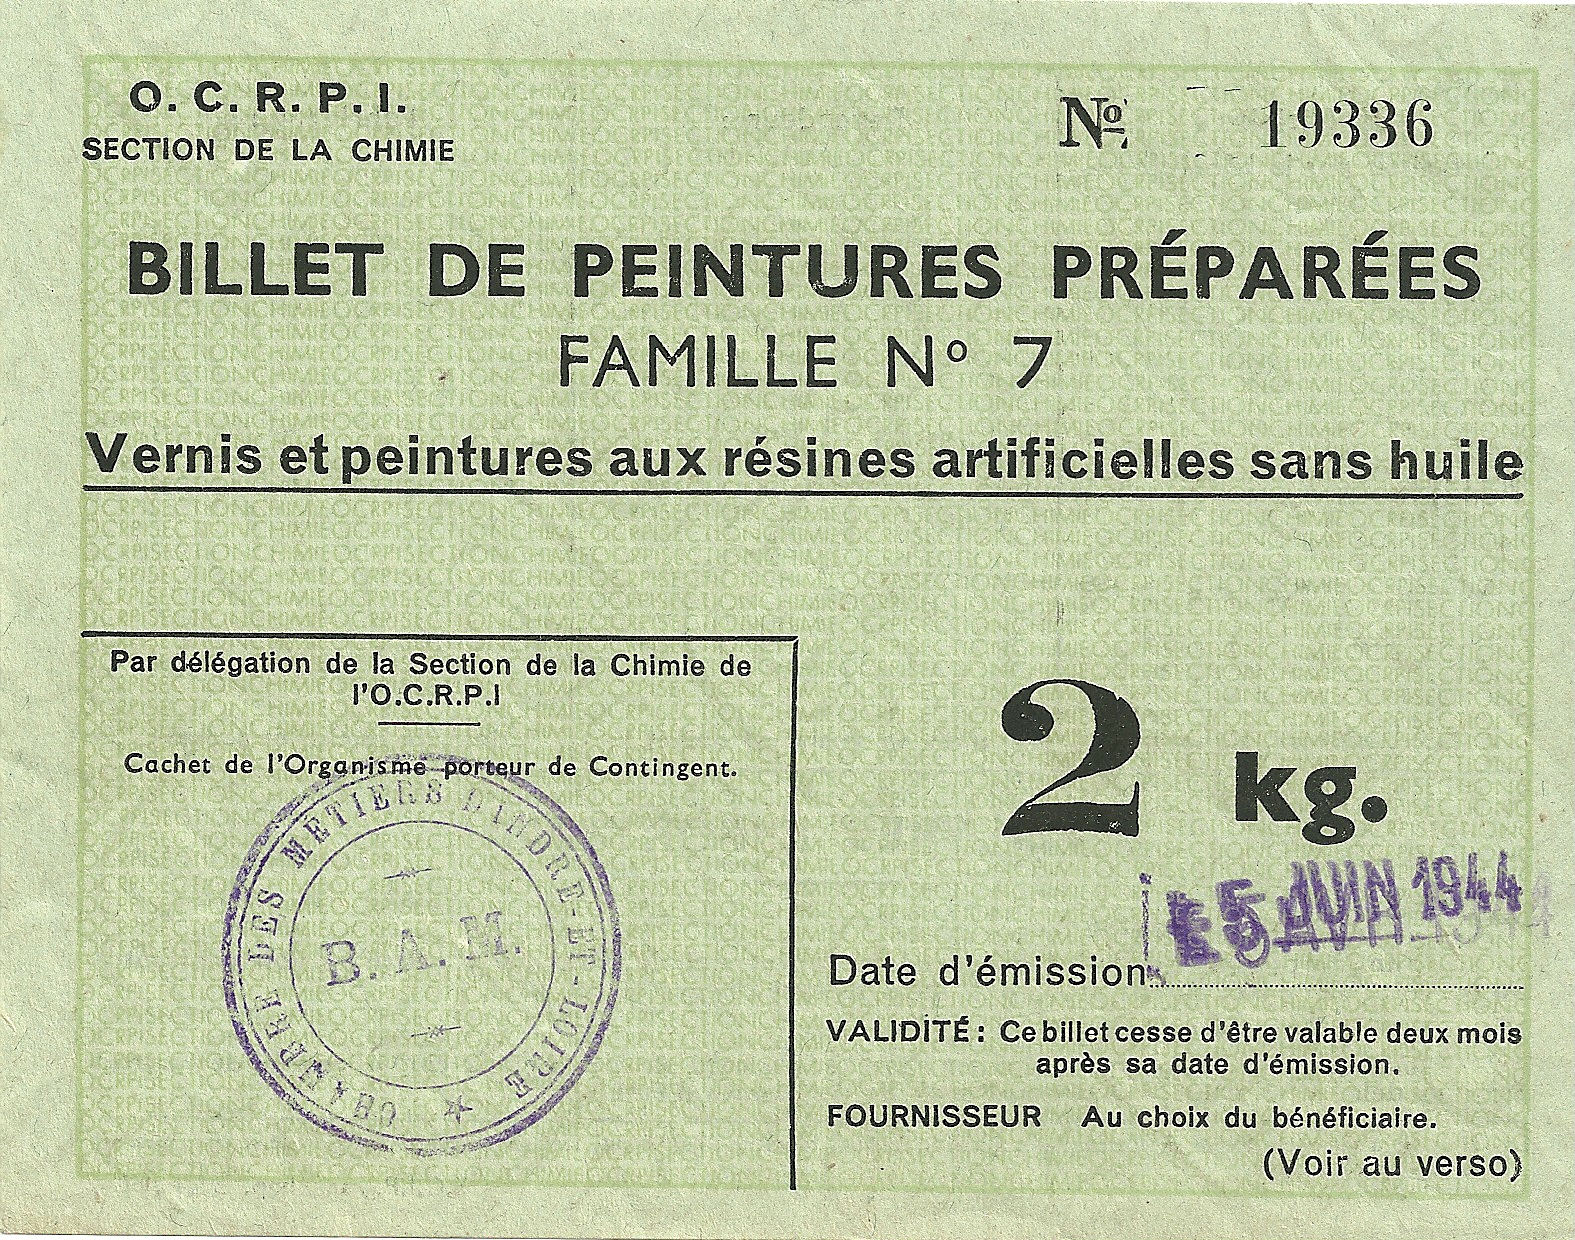 SECTION DE LA CHIMIE - BILLET DE PEINTURE PREPAREES FAMILLE N°7 - Vernis et peintures aux résines artificielles sans huile - 2 kg - 19 336